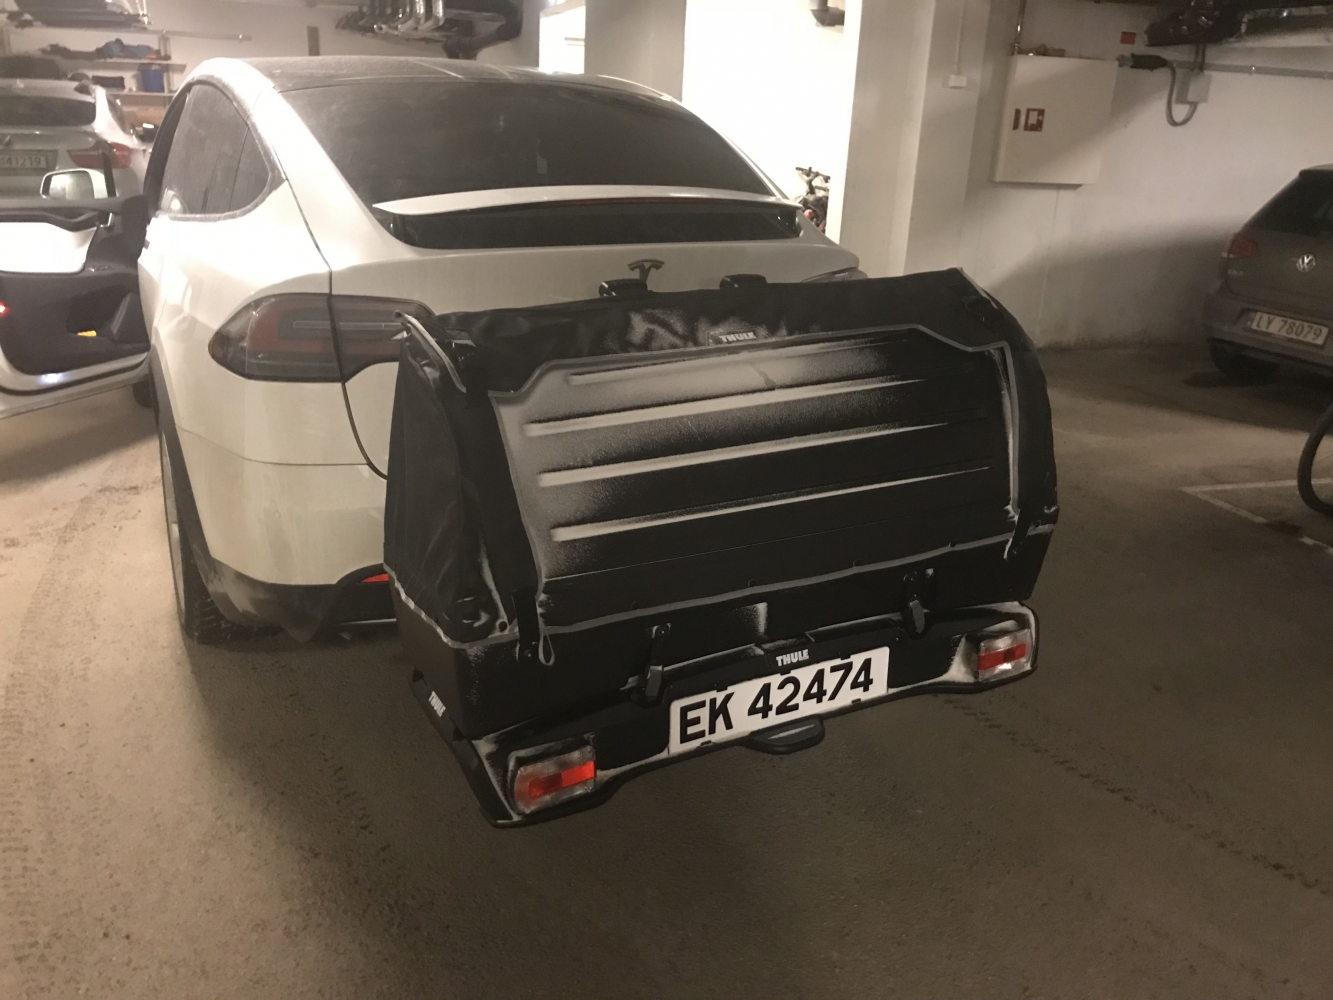 En vakker Midnattssol tur fra Tromsø med vår eco-vennlige Tesla Model X